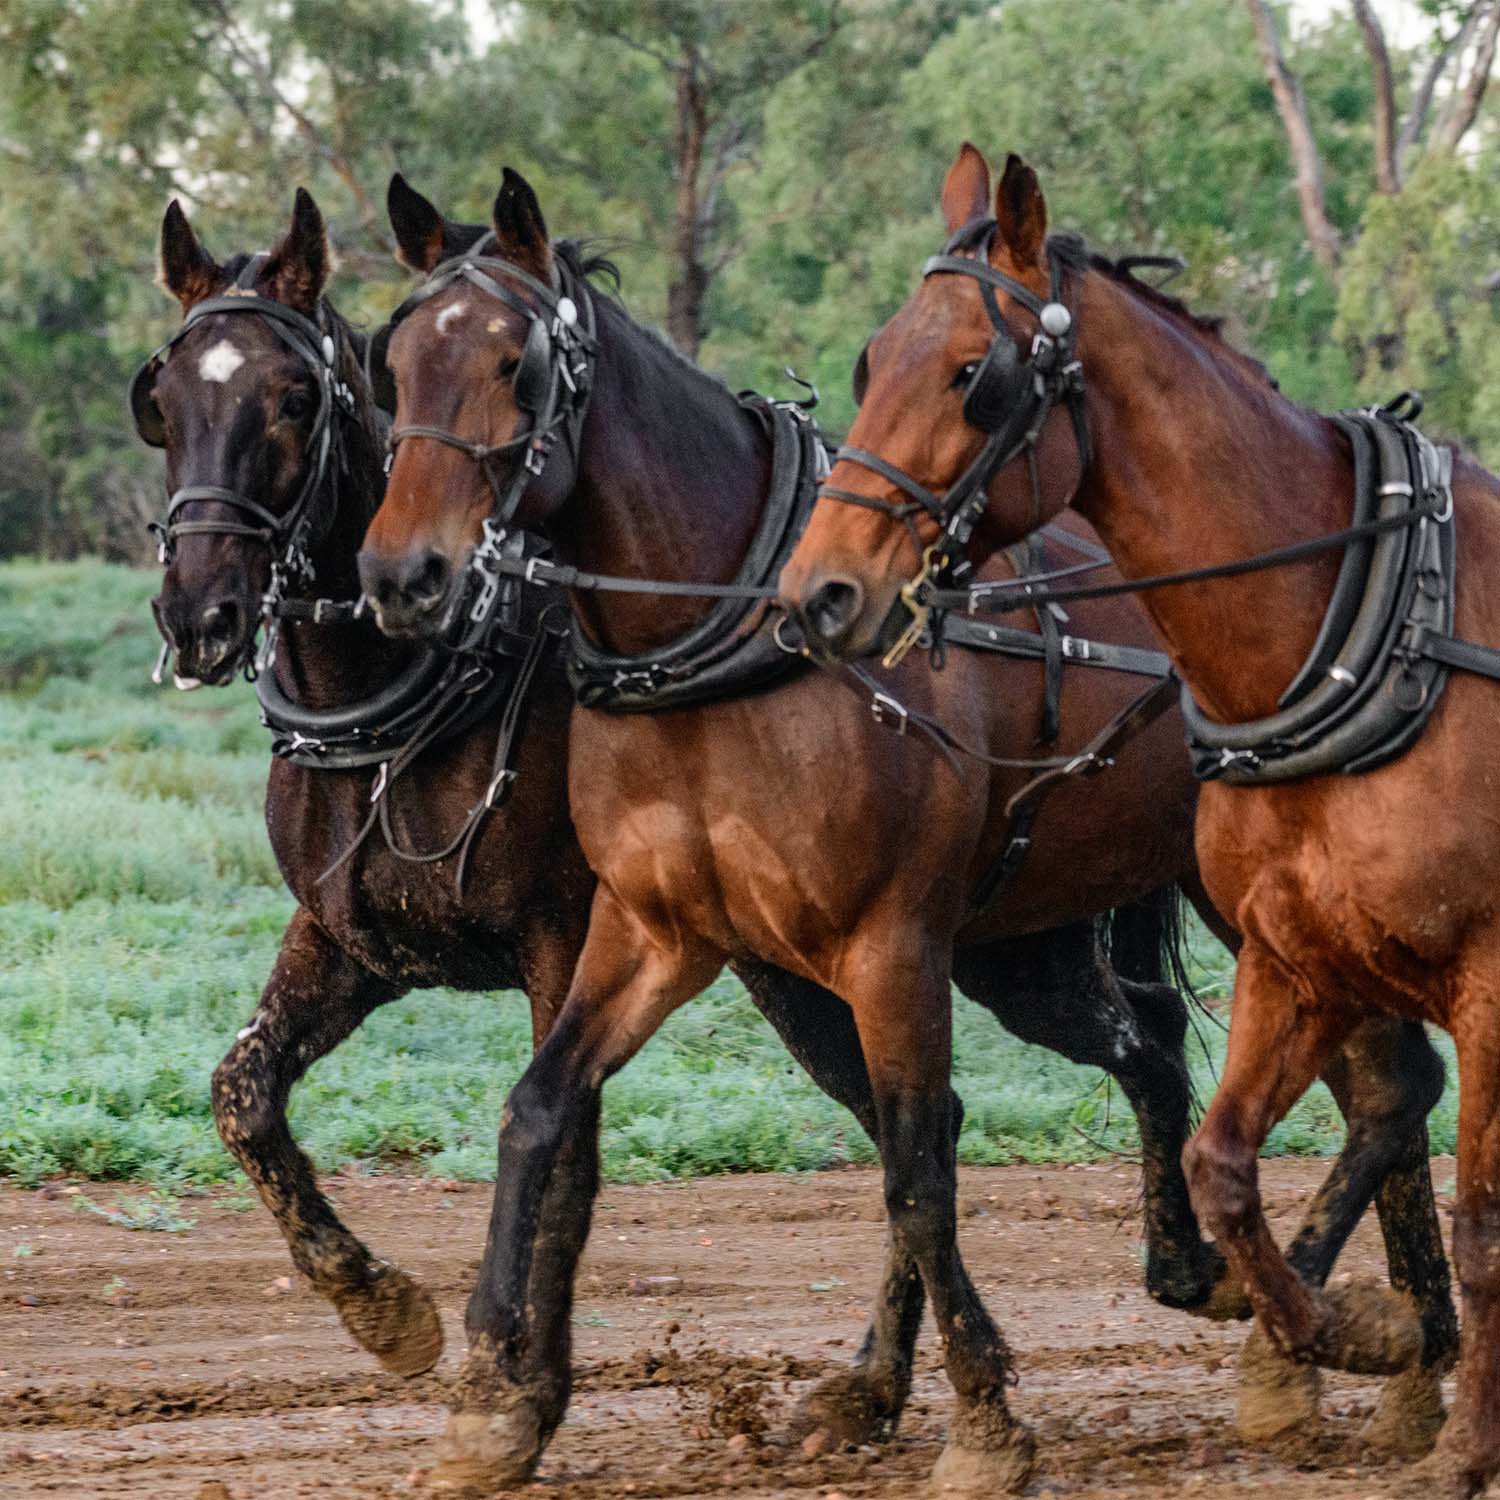 Three horses galloping along a muddy trail